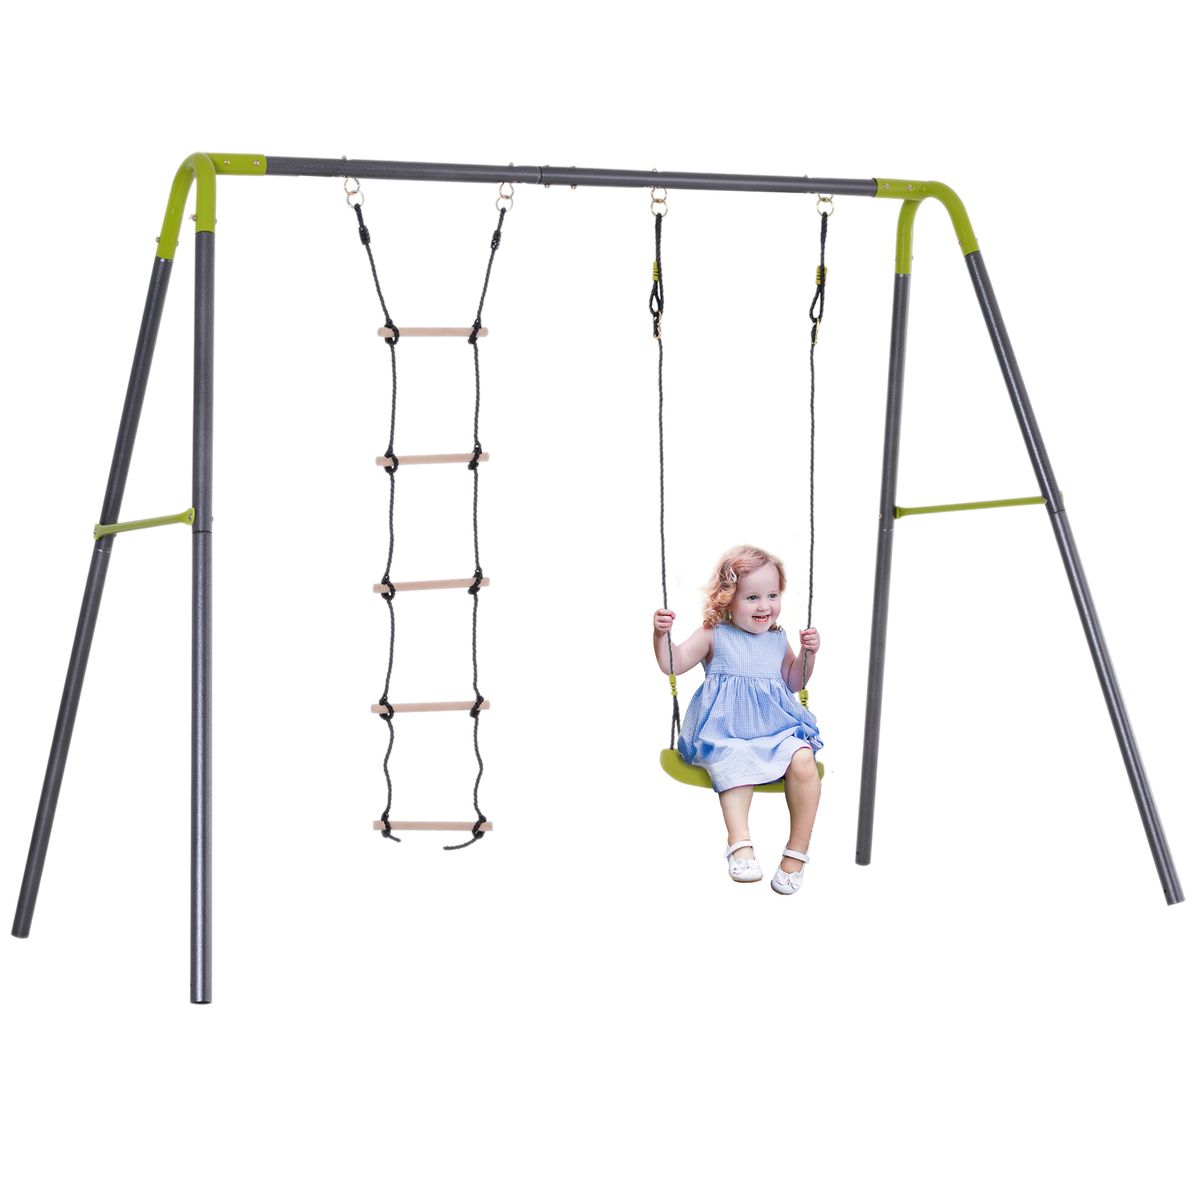 Balançoire extérieur pour enfant réglable pour aire de jeux